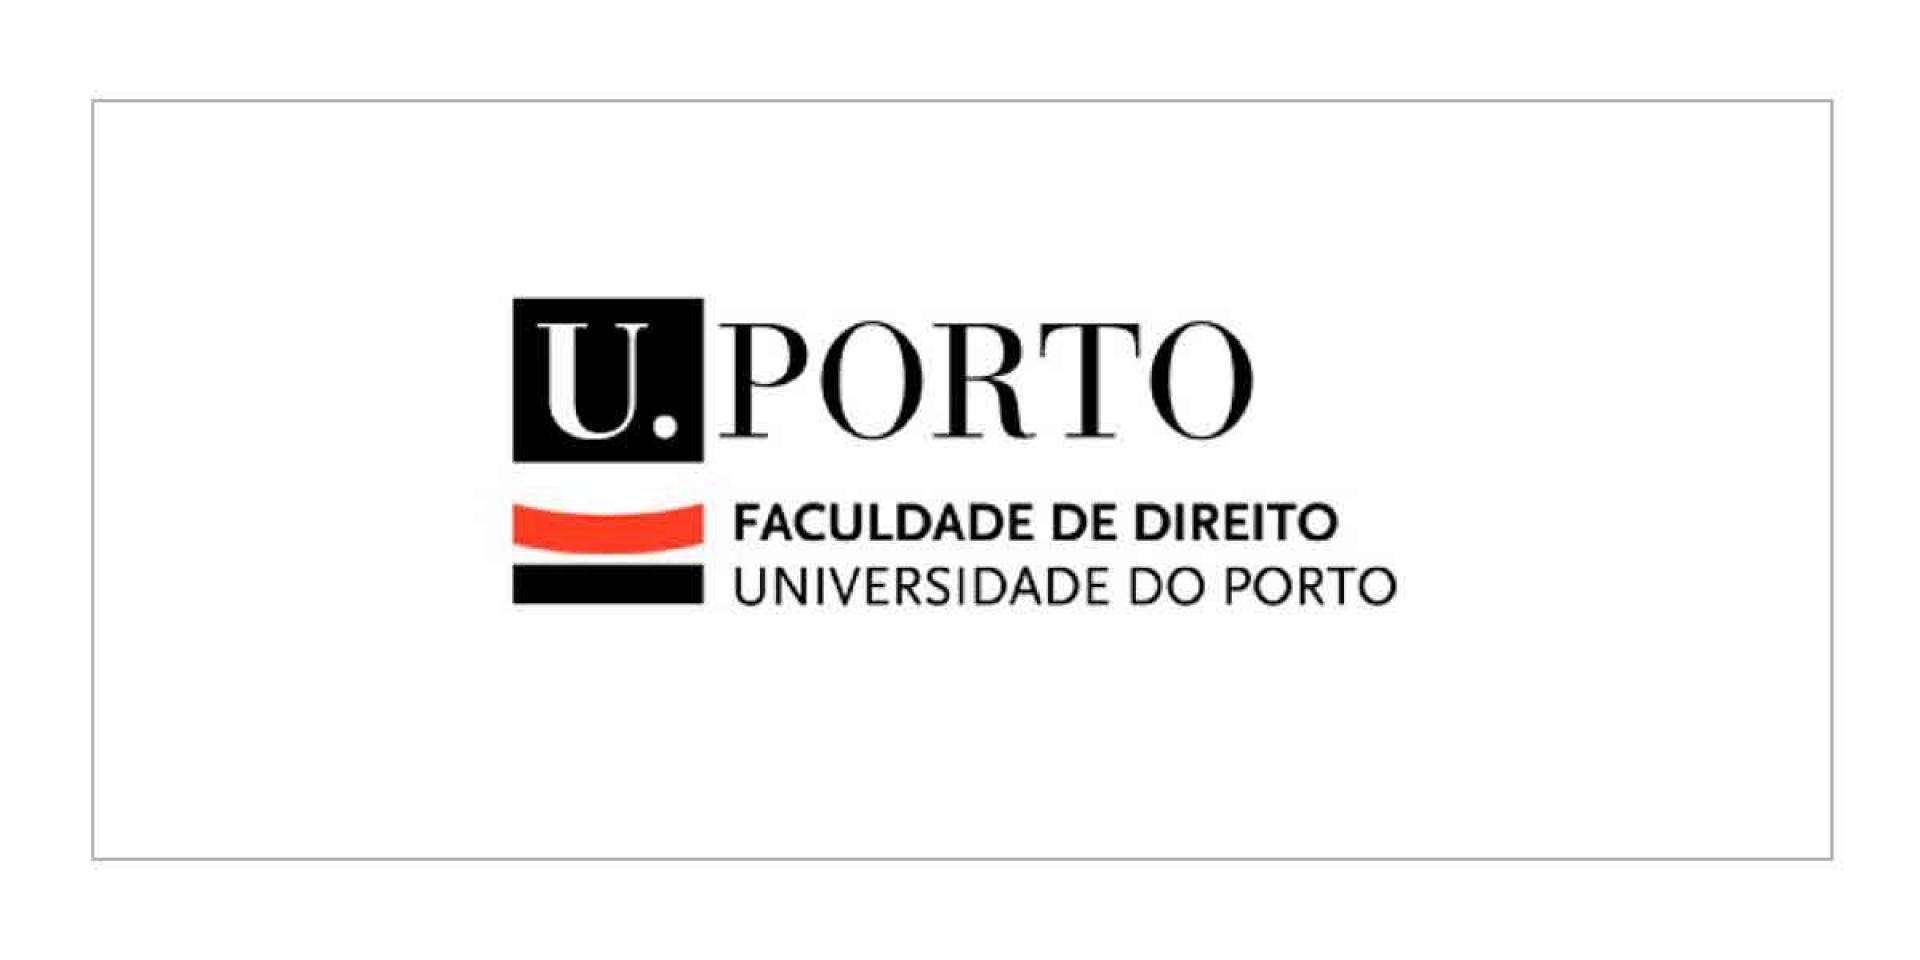 Faculdade de Direito | Universidade do Porto